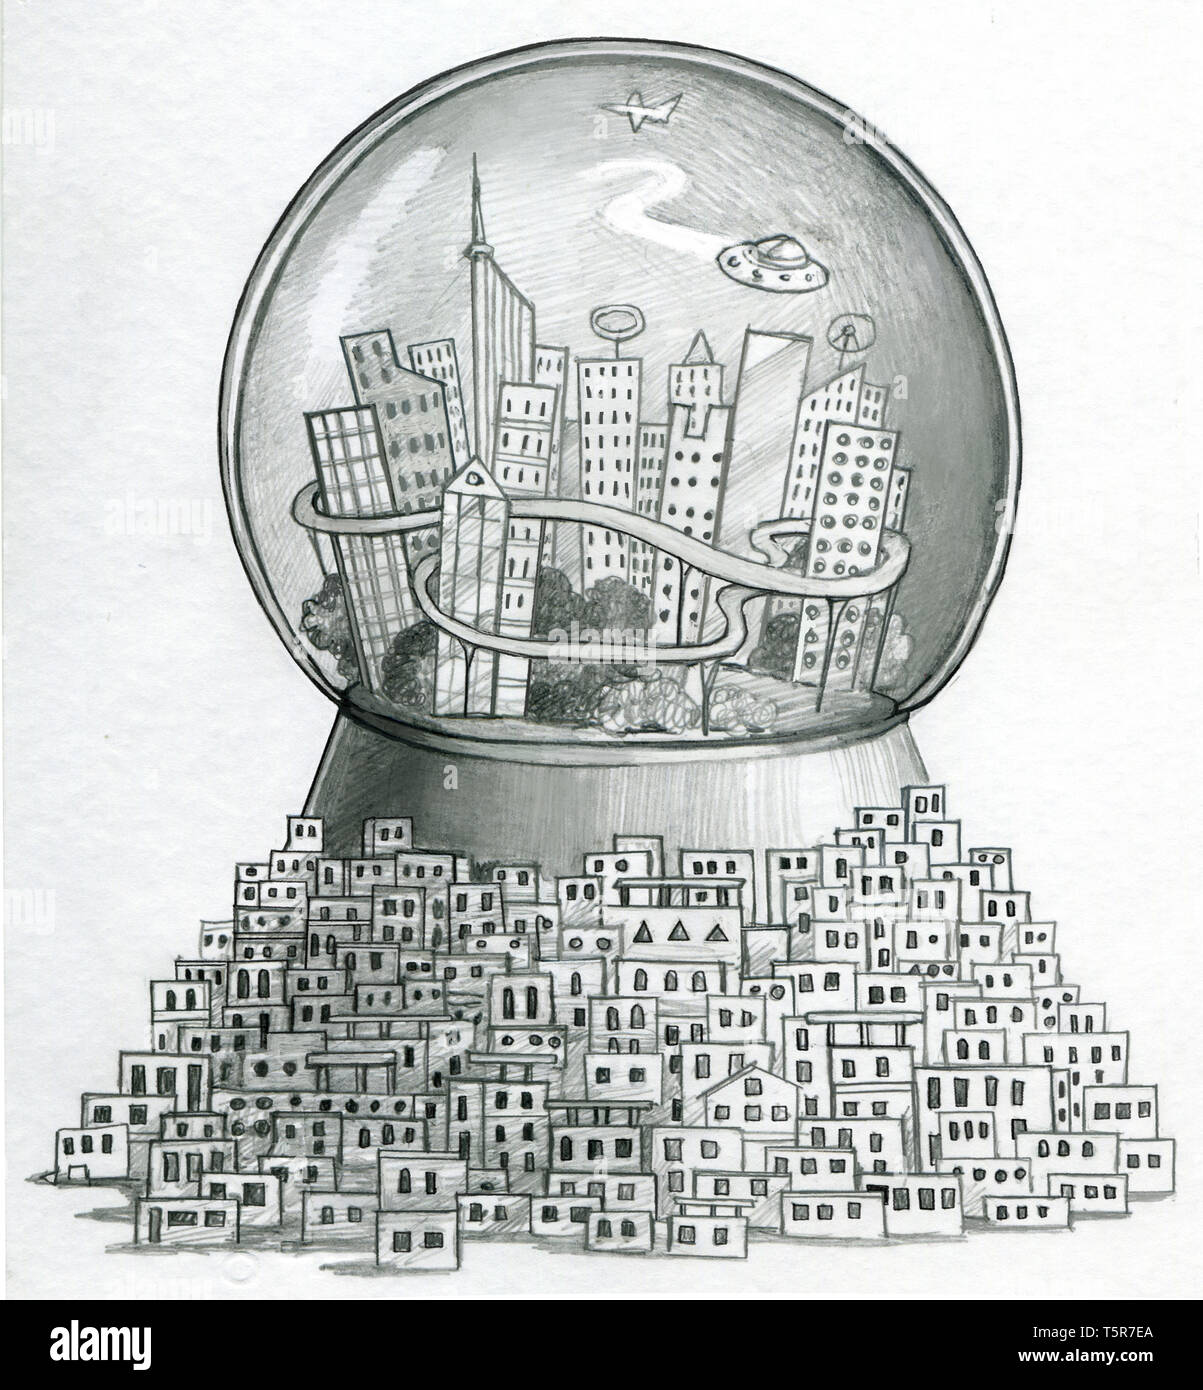 In einem Glas Kugel gibt es ein Smart City, während draußen gibt es einen großen Slum Allegorie der Kluft zwischen Arm und Reich Stockfoto